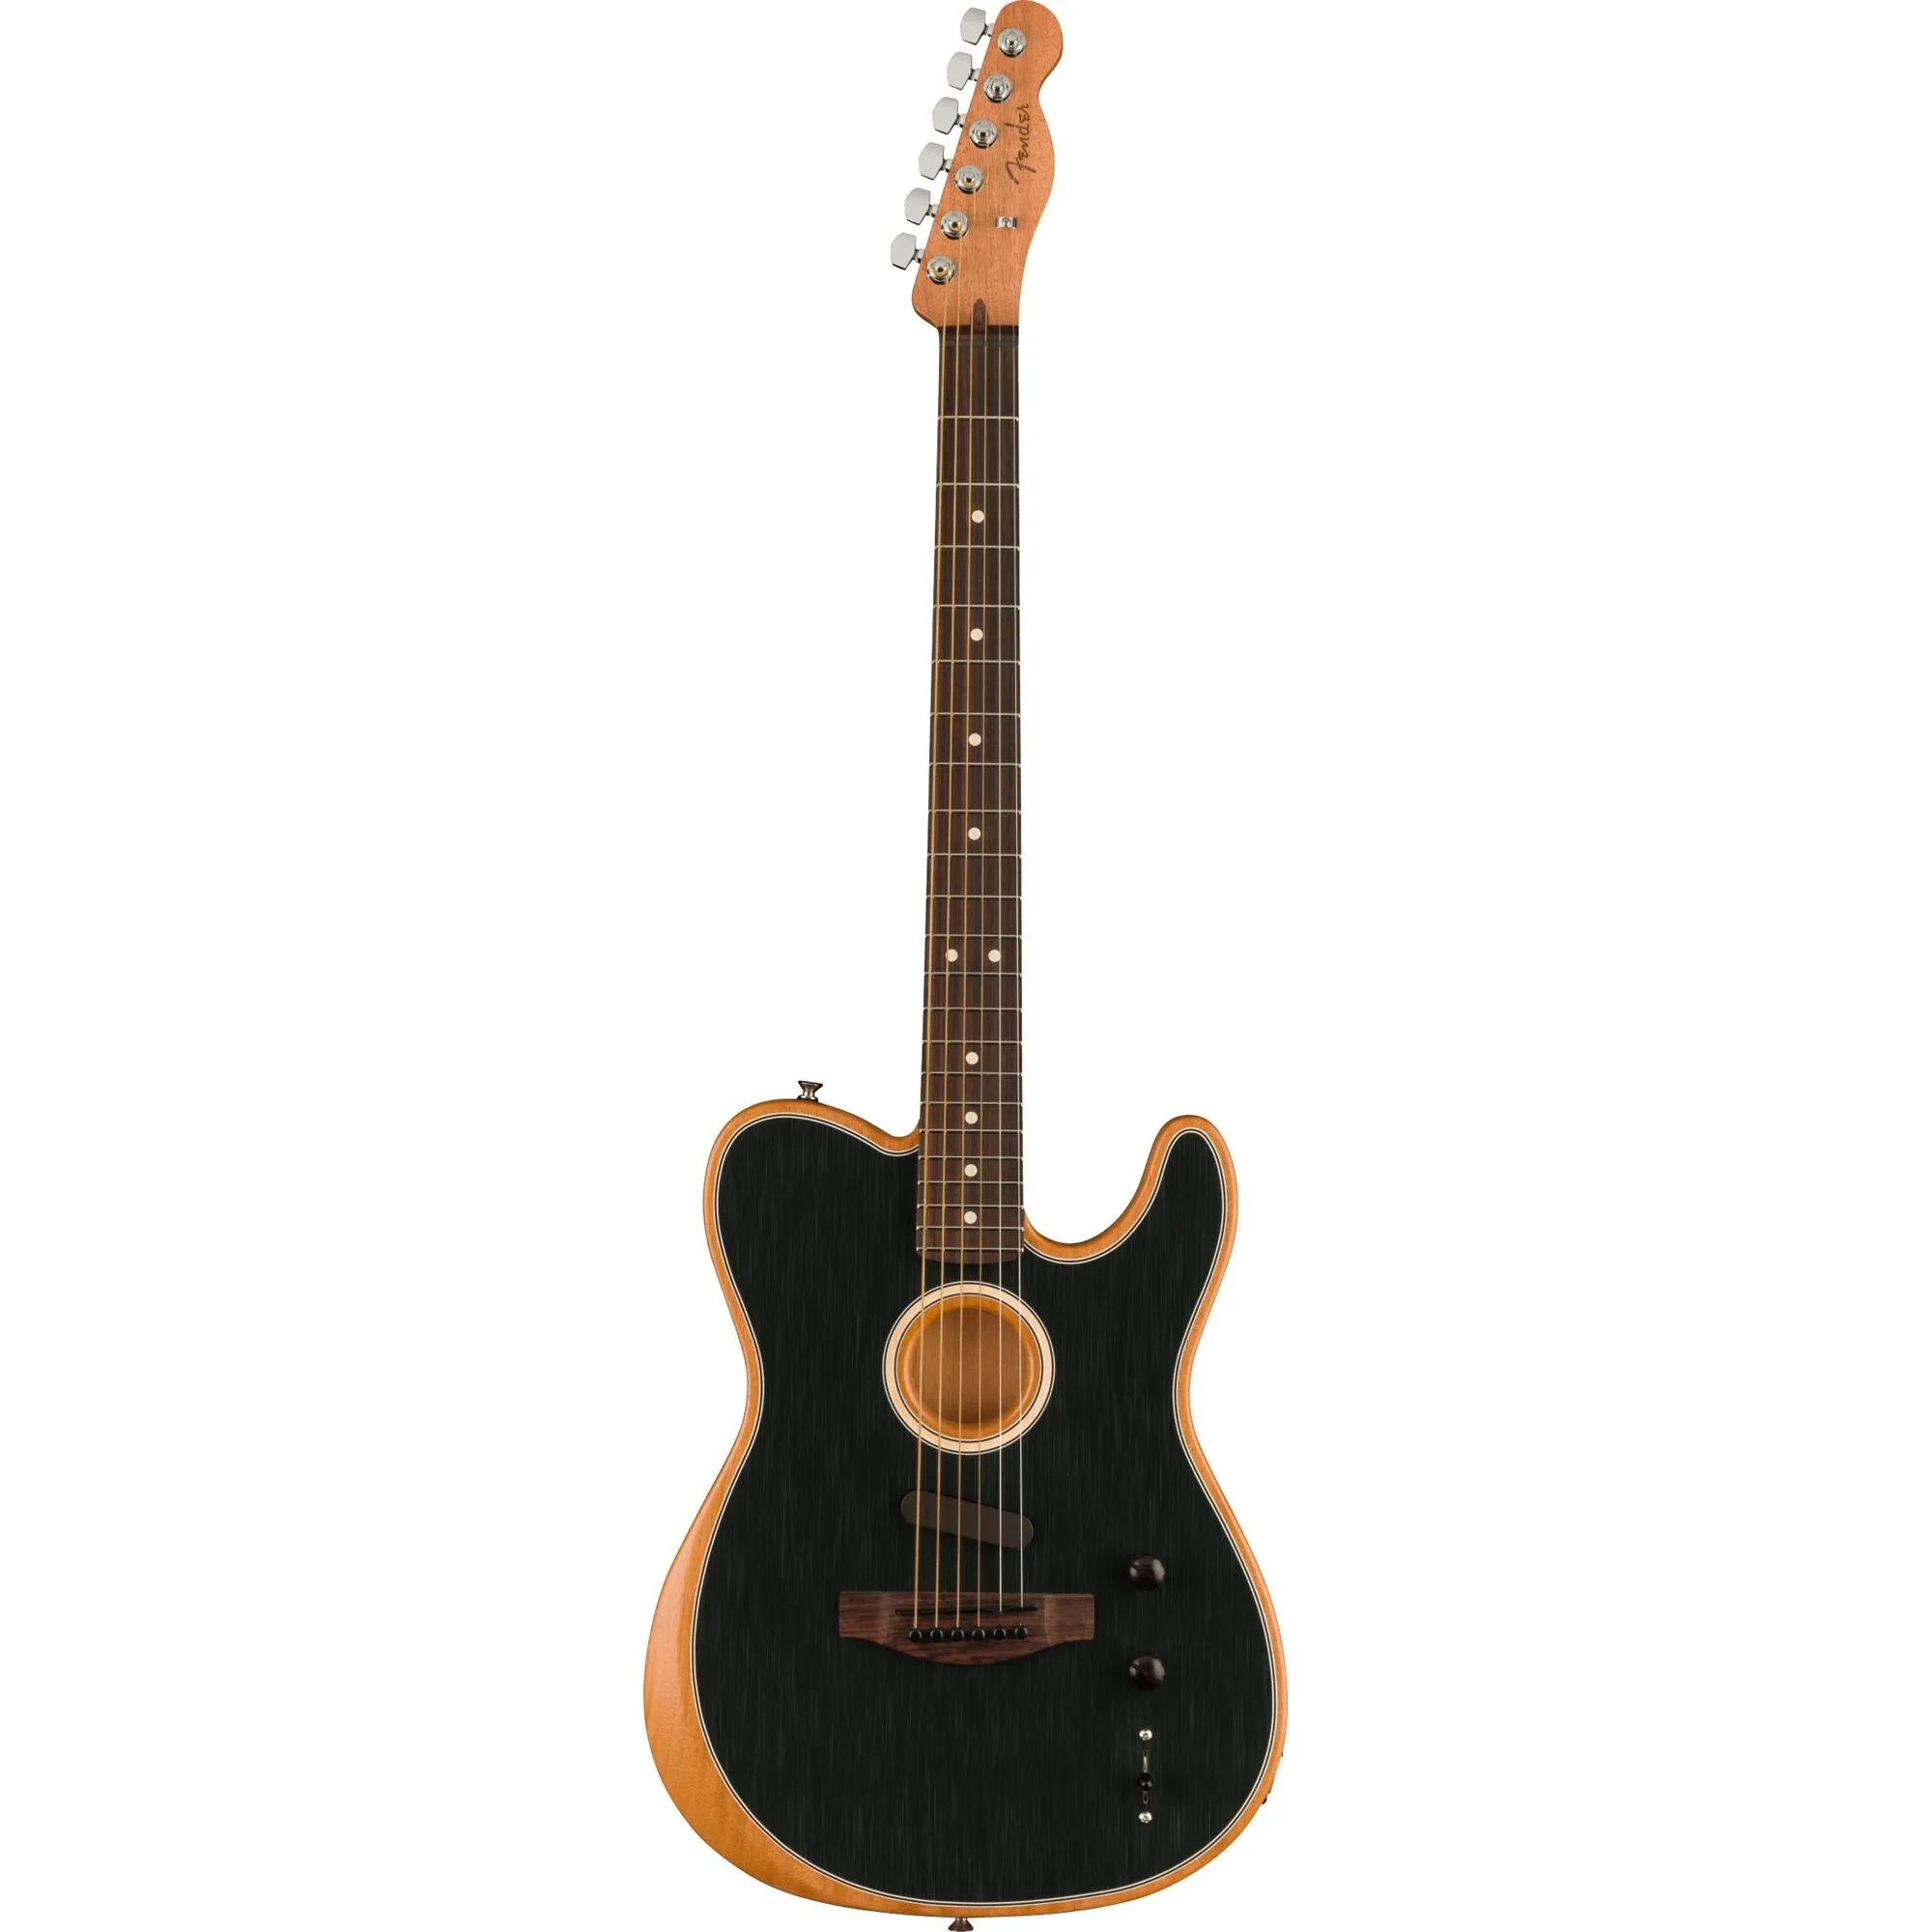 Violão Fender Acoustasonic Player Telecaster Brushed Black por 13.169,99 à vista no boleto/pix ou parcele em até 12x sem juros. Compre na loja Mundomax!